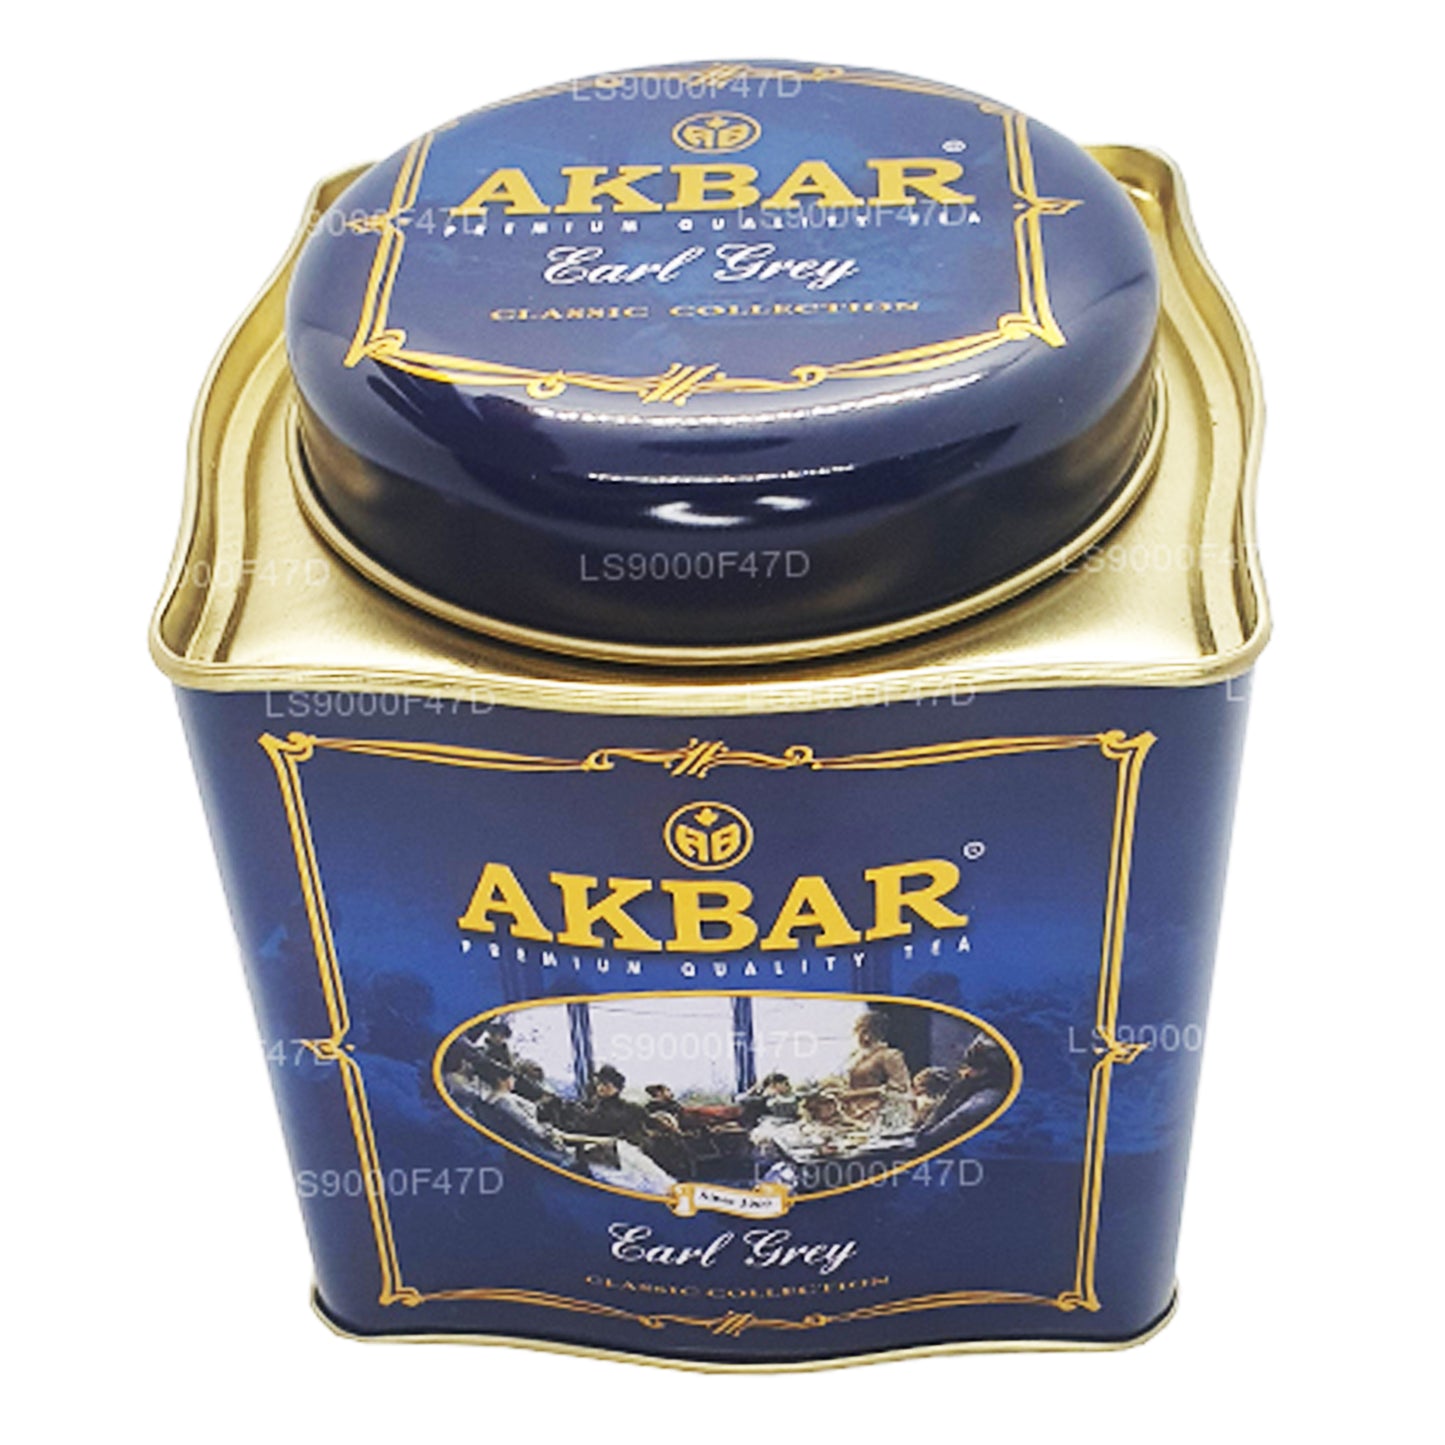 Akbar Classic Earl Grey Leaf Tea Dose (250 g)